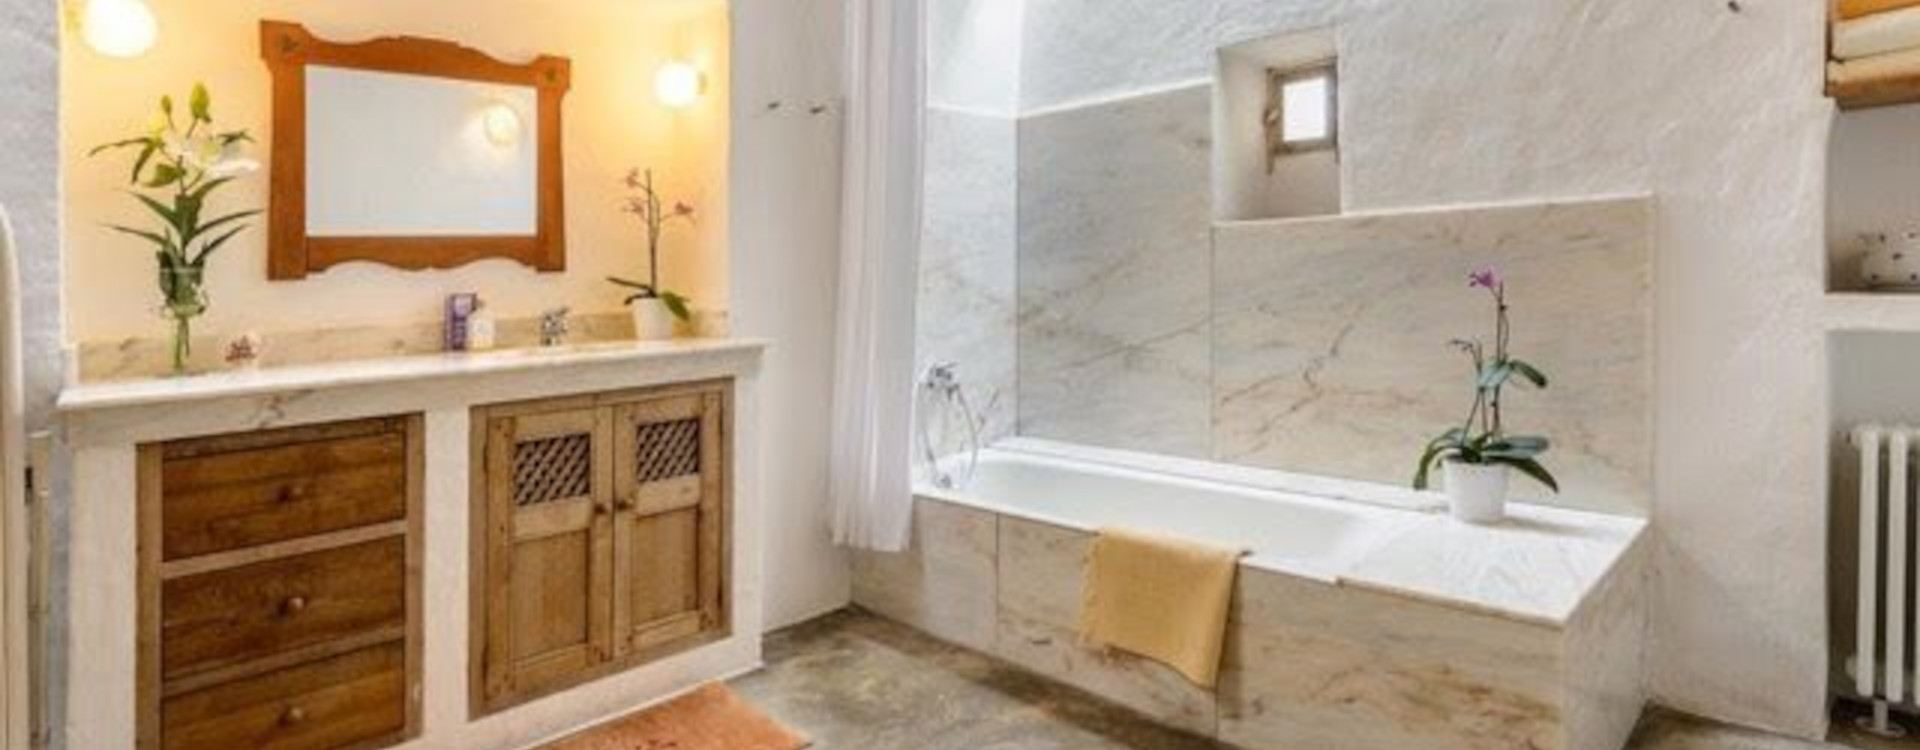 Casa Berner for rent ibiza villa bathroom